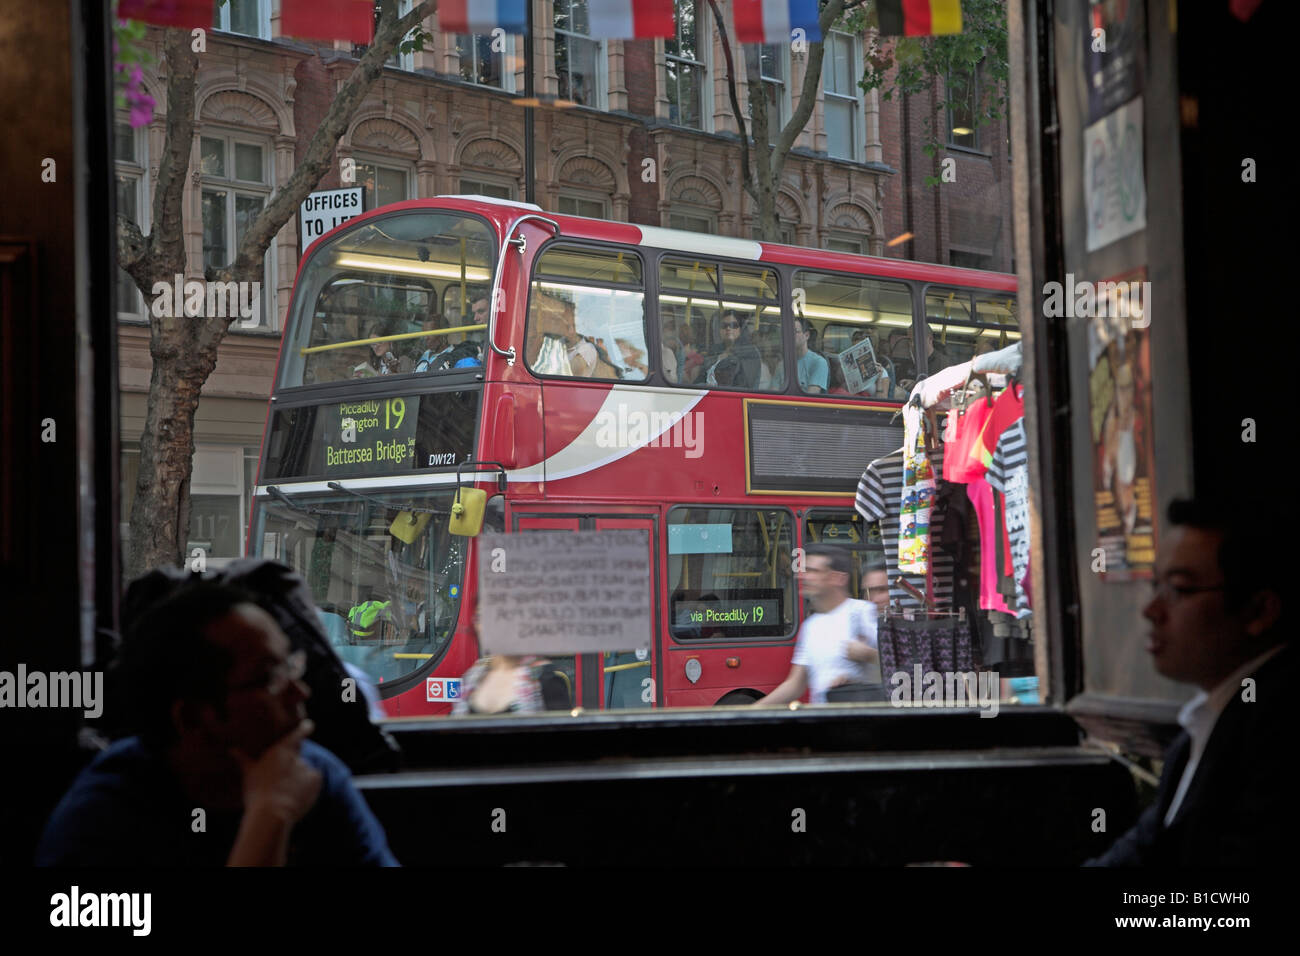 Bus rosso a due piani strada trafficata scena inquadrata dalla finestra, Londra, Inghilterra Foto Stock